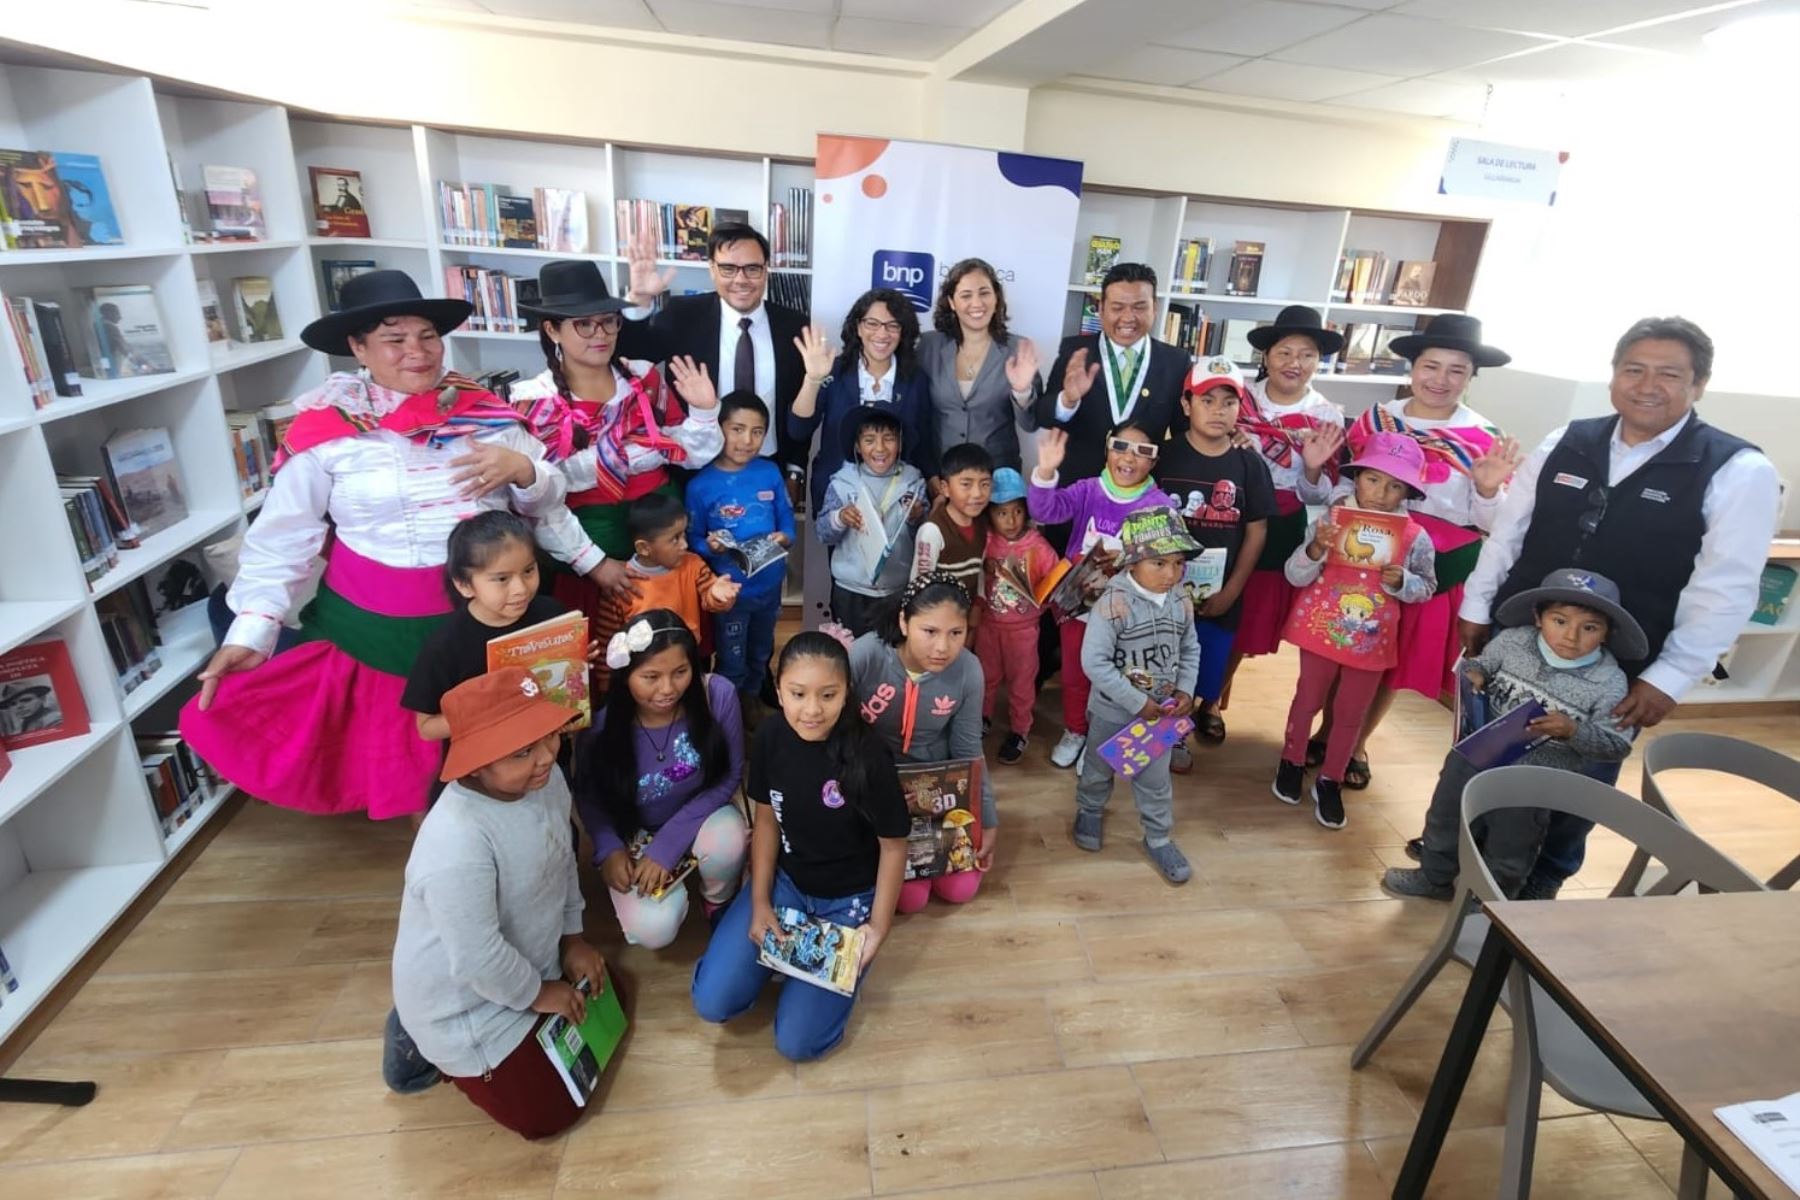 La ministra de Cultura, Leslie Urteaga, y la jefa institucional de la BNP, Fabiola Vergara, participaron en la inauguración de una estación de biblioteca pública en la región Tacna. Foto: BNP/Difusión.